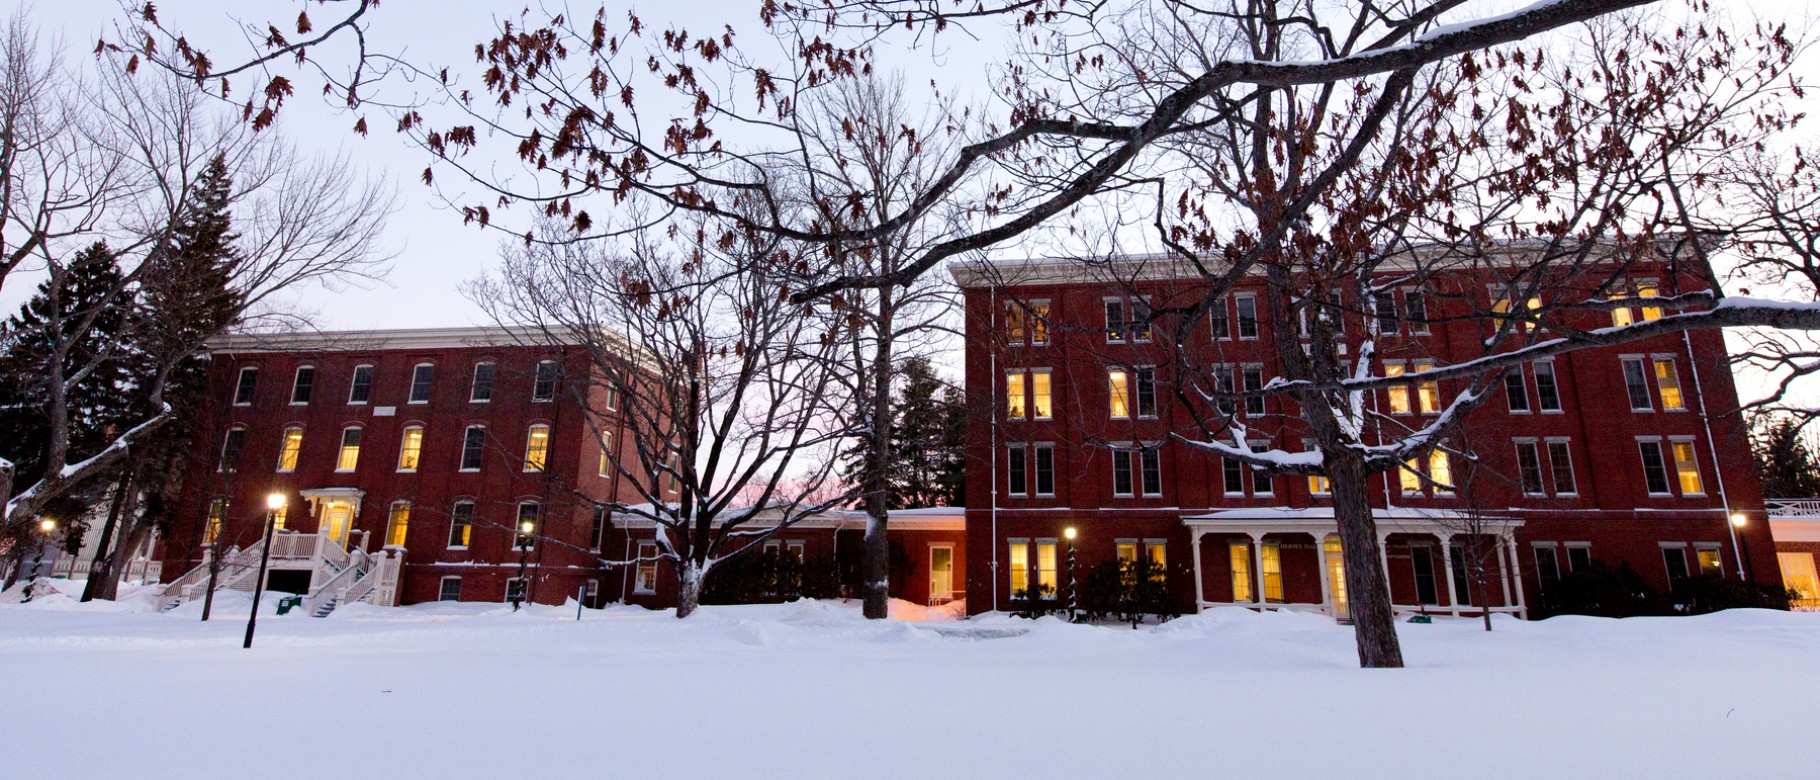 Portland Campus in winter